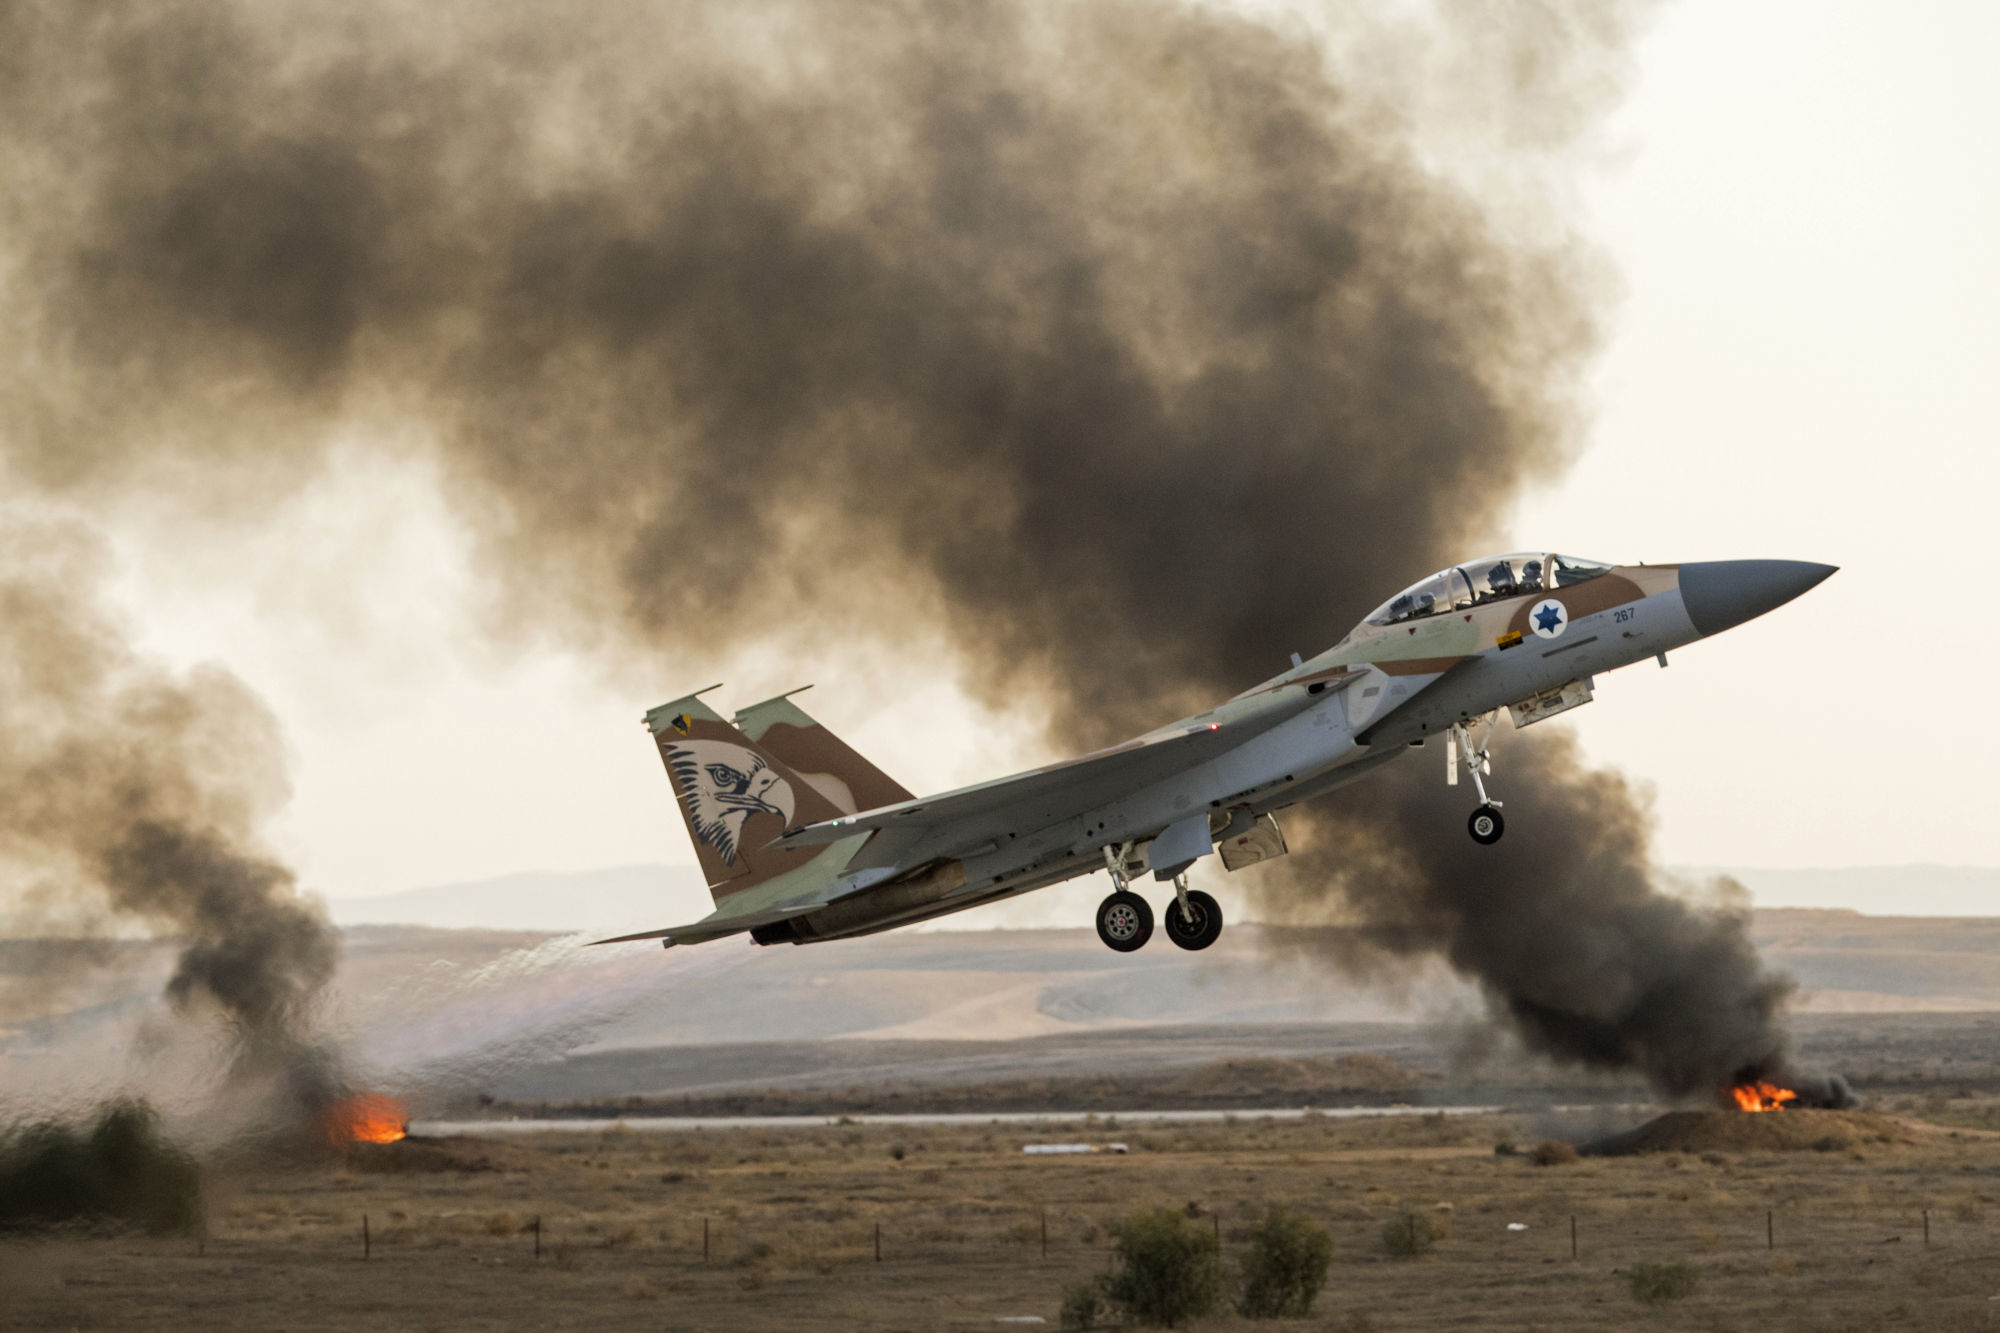   طائرة إسرائيلية تسقط فى لبنان